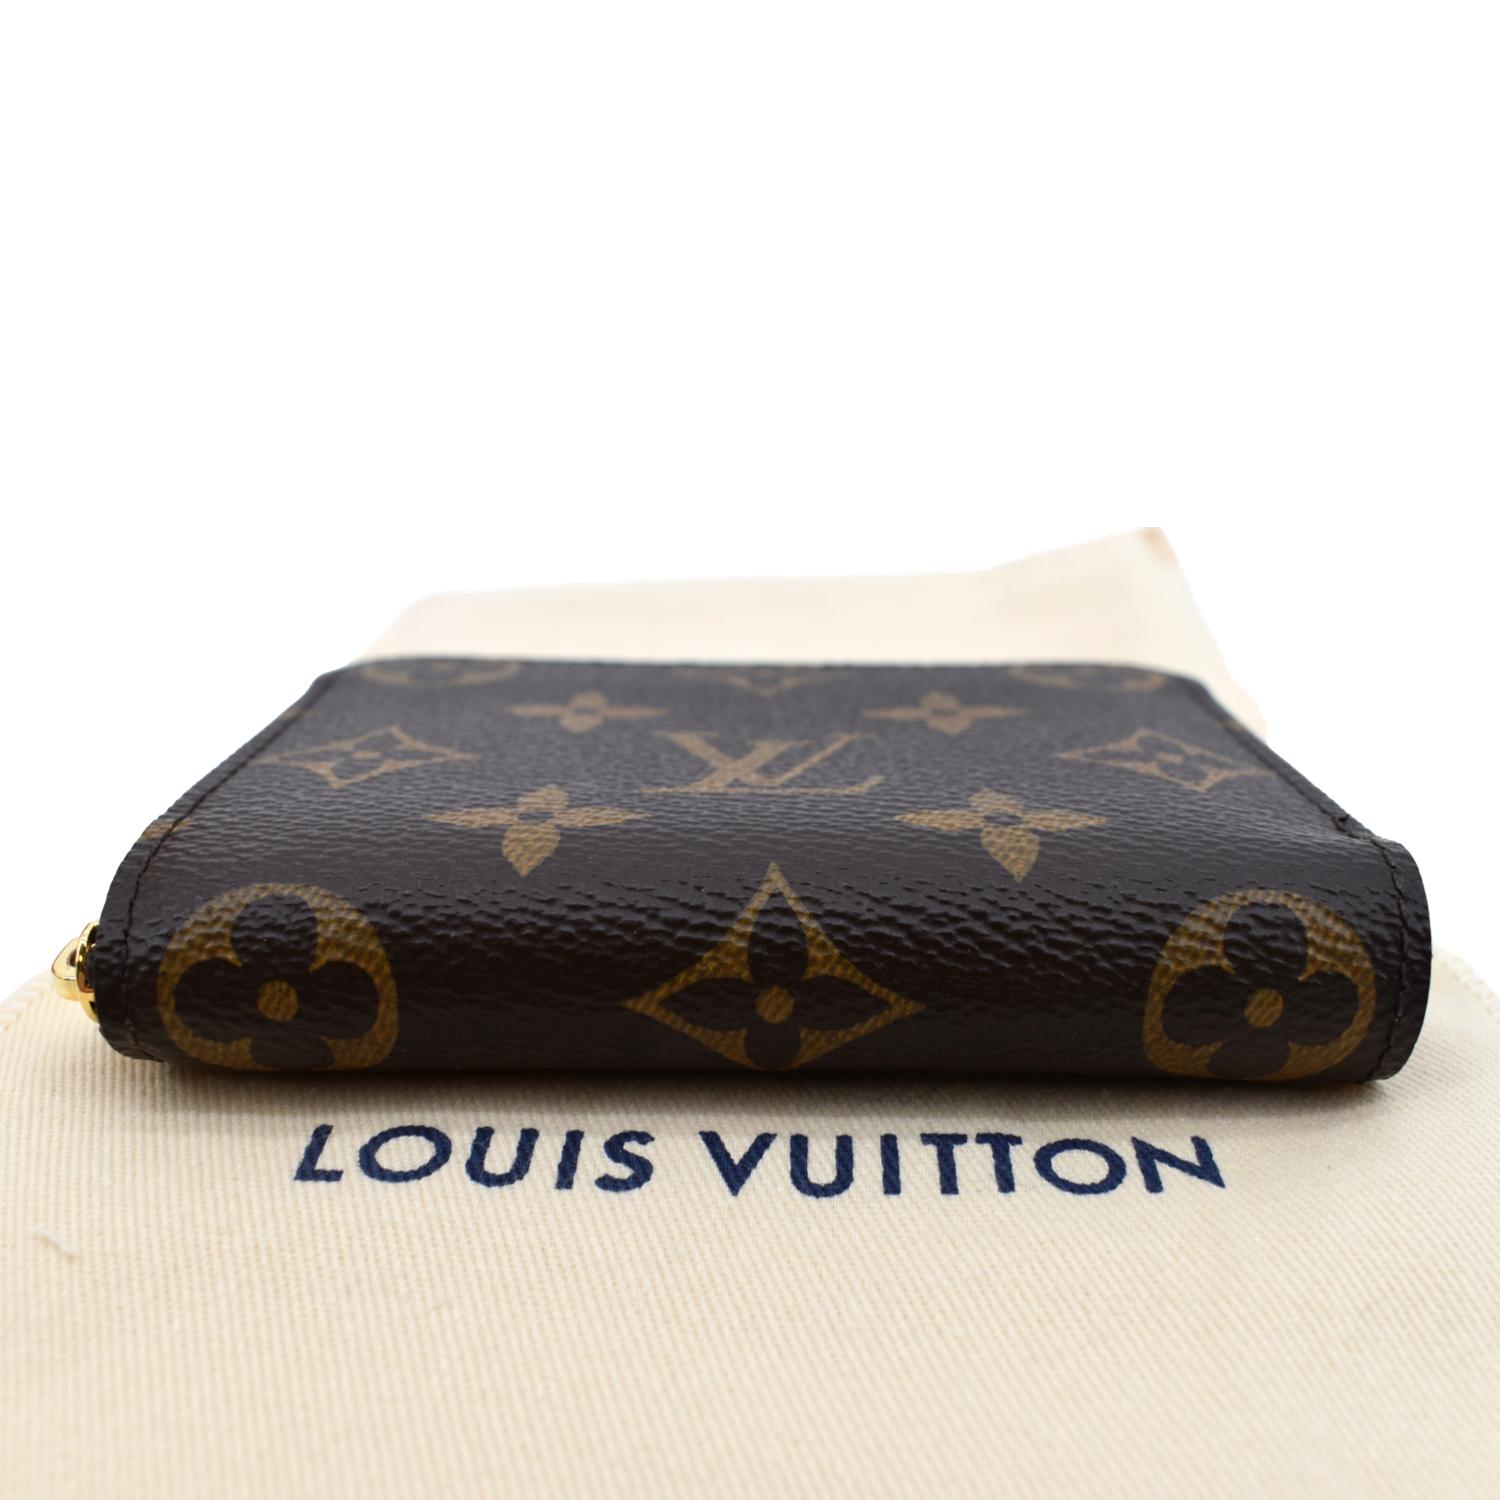 Louis Vuitton, Bags, Louis Vuitton Monogram Canvas Cosmetic Case Pouch  Zippy Holder Travel Ba